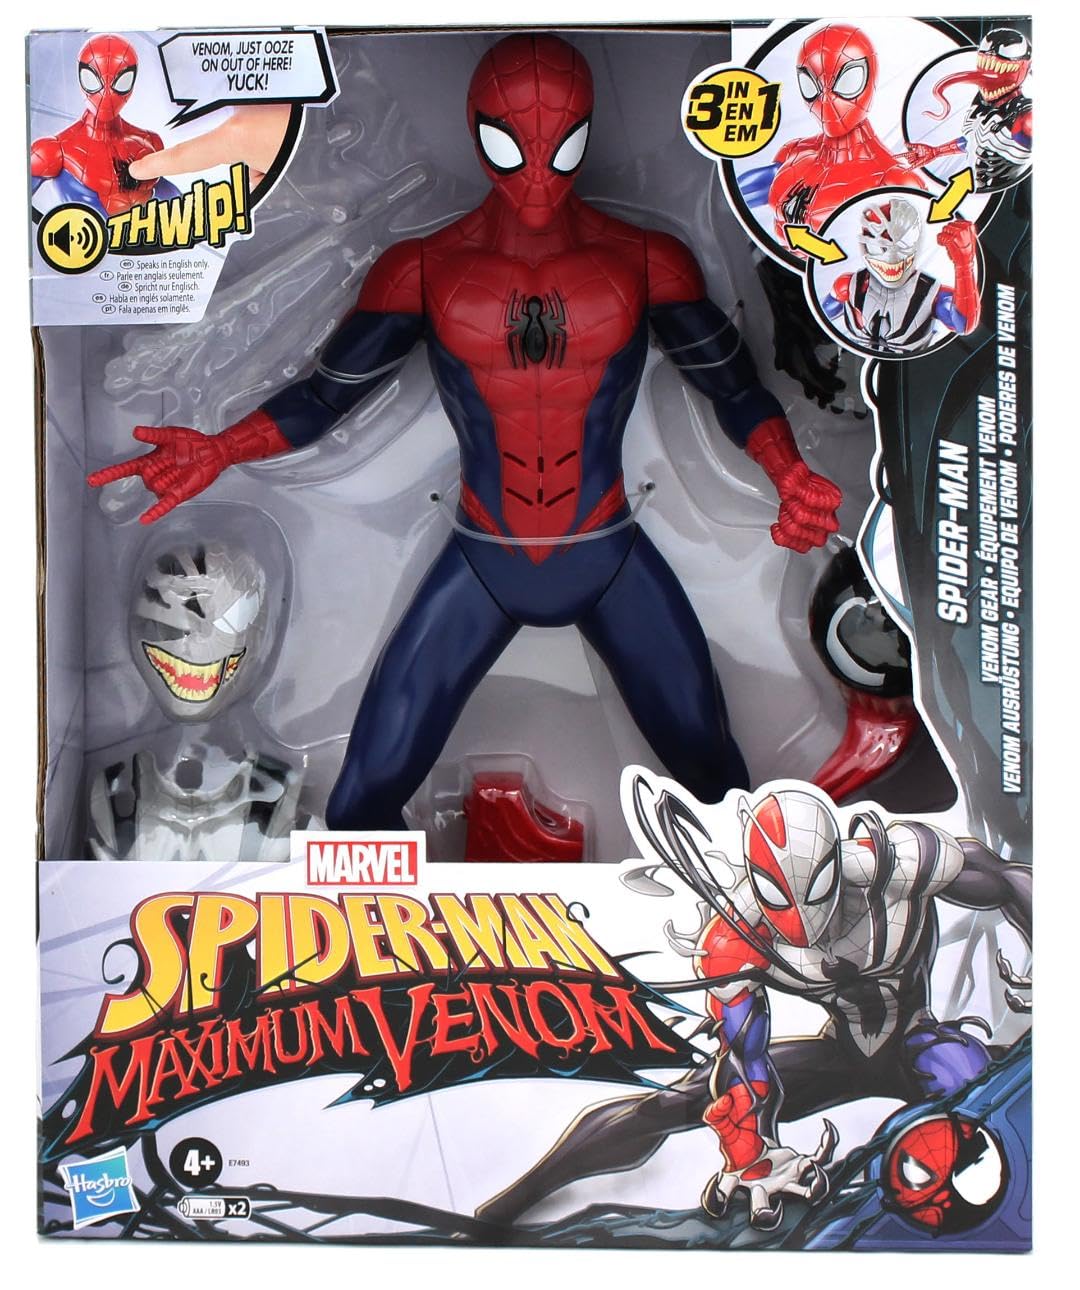 Marvel Spider-Man Maximum Venom Titan Hero Series 3 in 1 Spider-Man Exclusive Action Figure with Alien Symbiote Venom Gear, Includes Spider-Man 6 Sticker Sheets